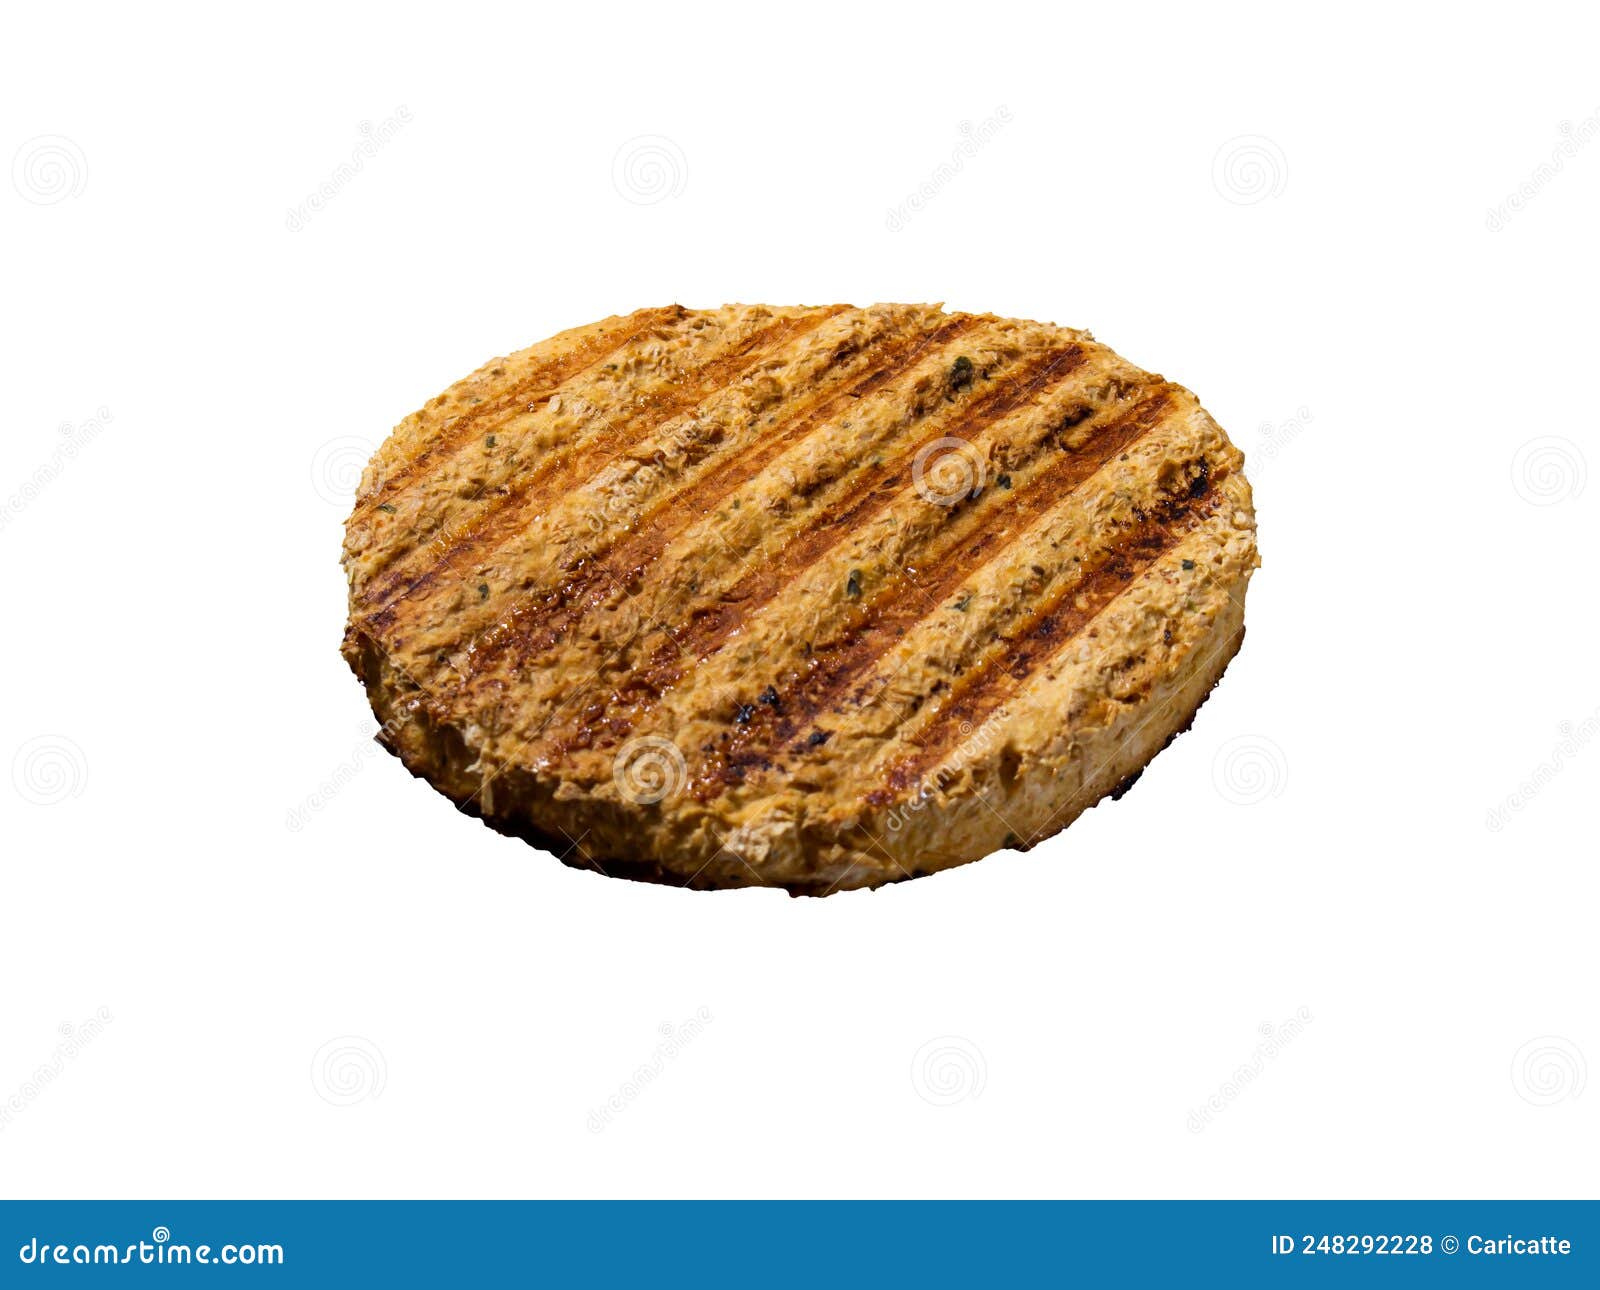 floating grilled chicken burger with grill marks, flutuante hamburger grelhado com marcas de grelh